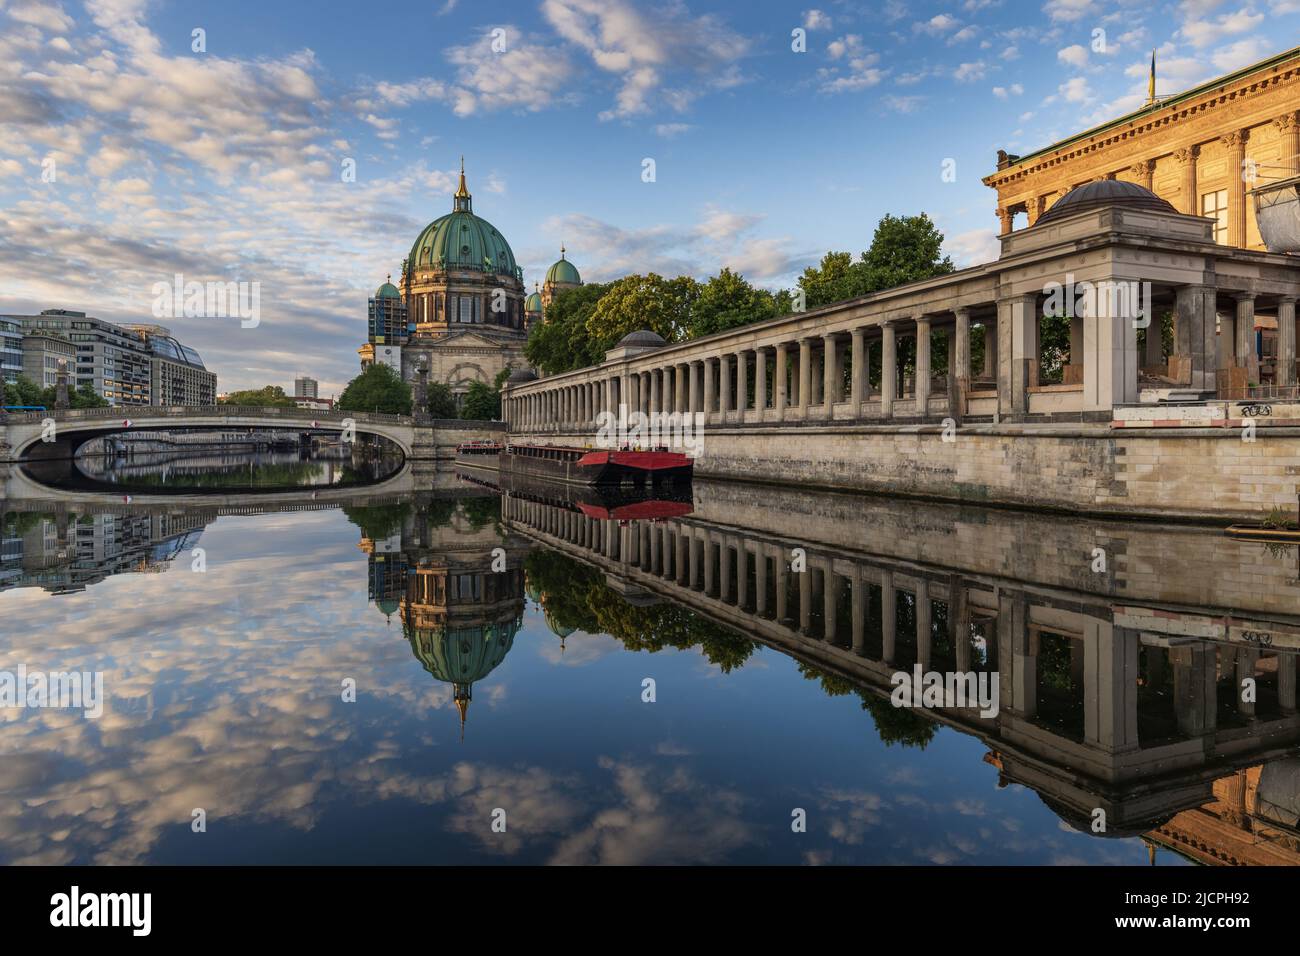 Galerie nationale, pont Friedrichs et Berliner Dom (cathédrale de Berlin) se reflétant dans la Spree à Berlin. Banque D'Images